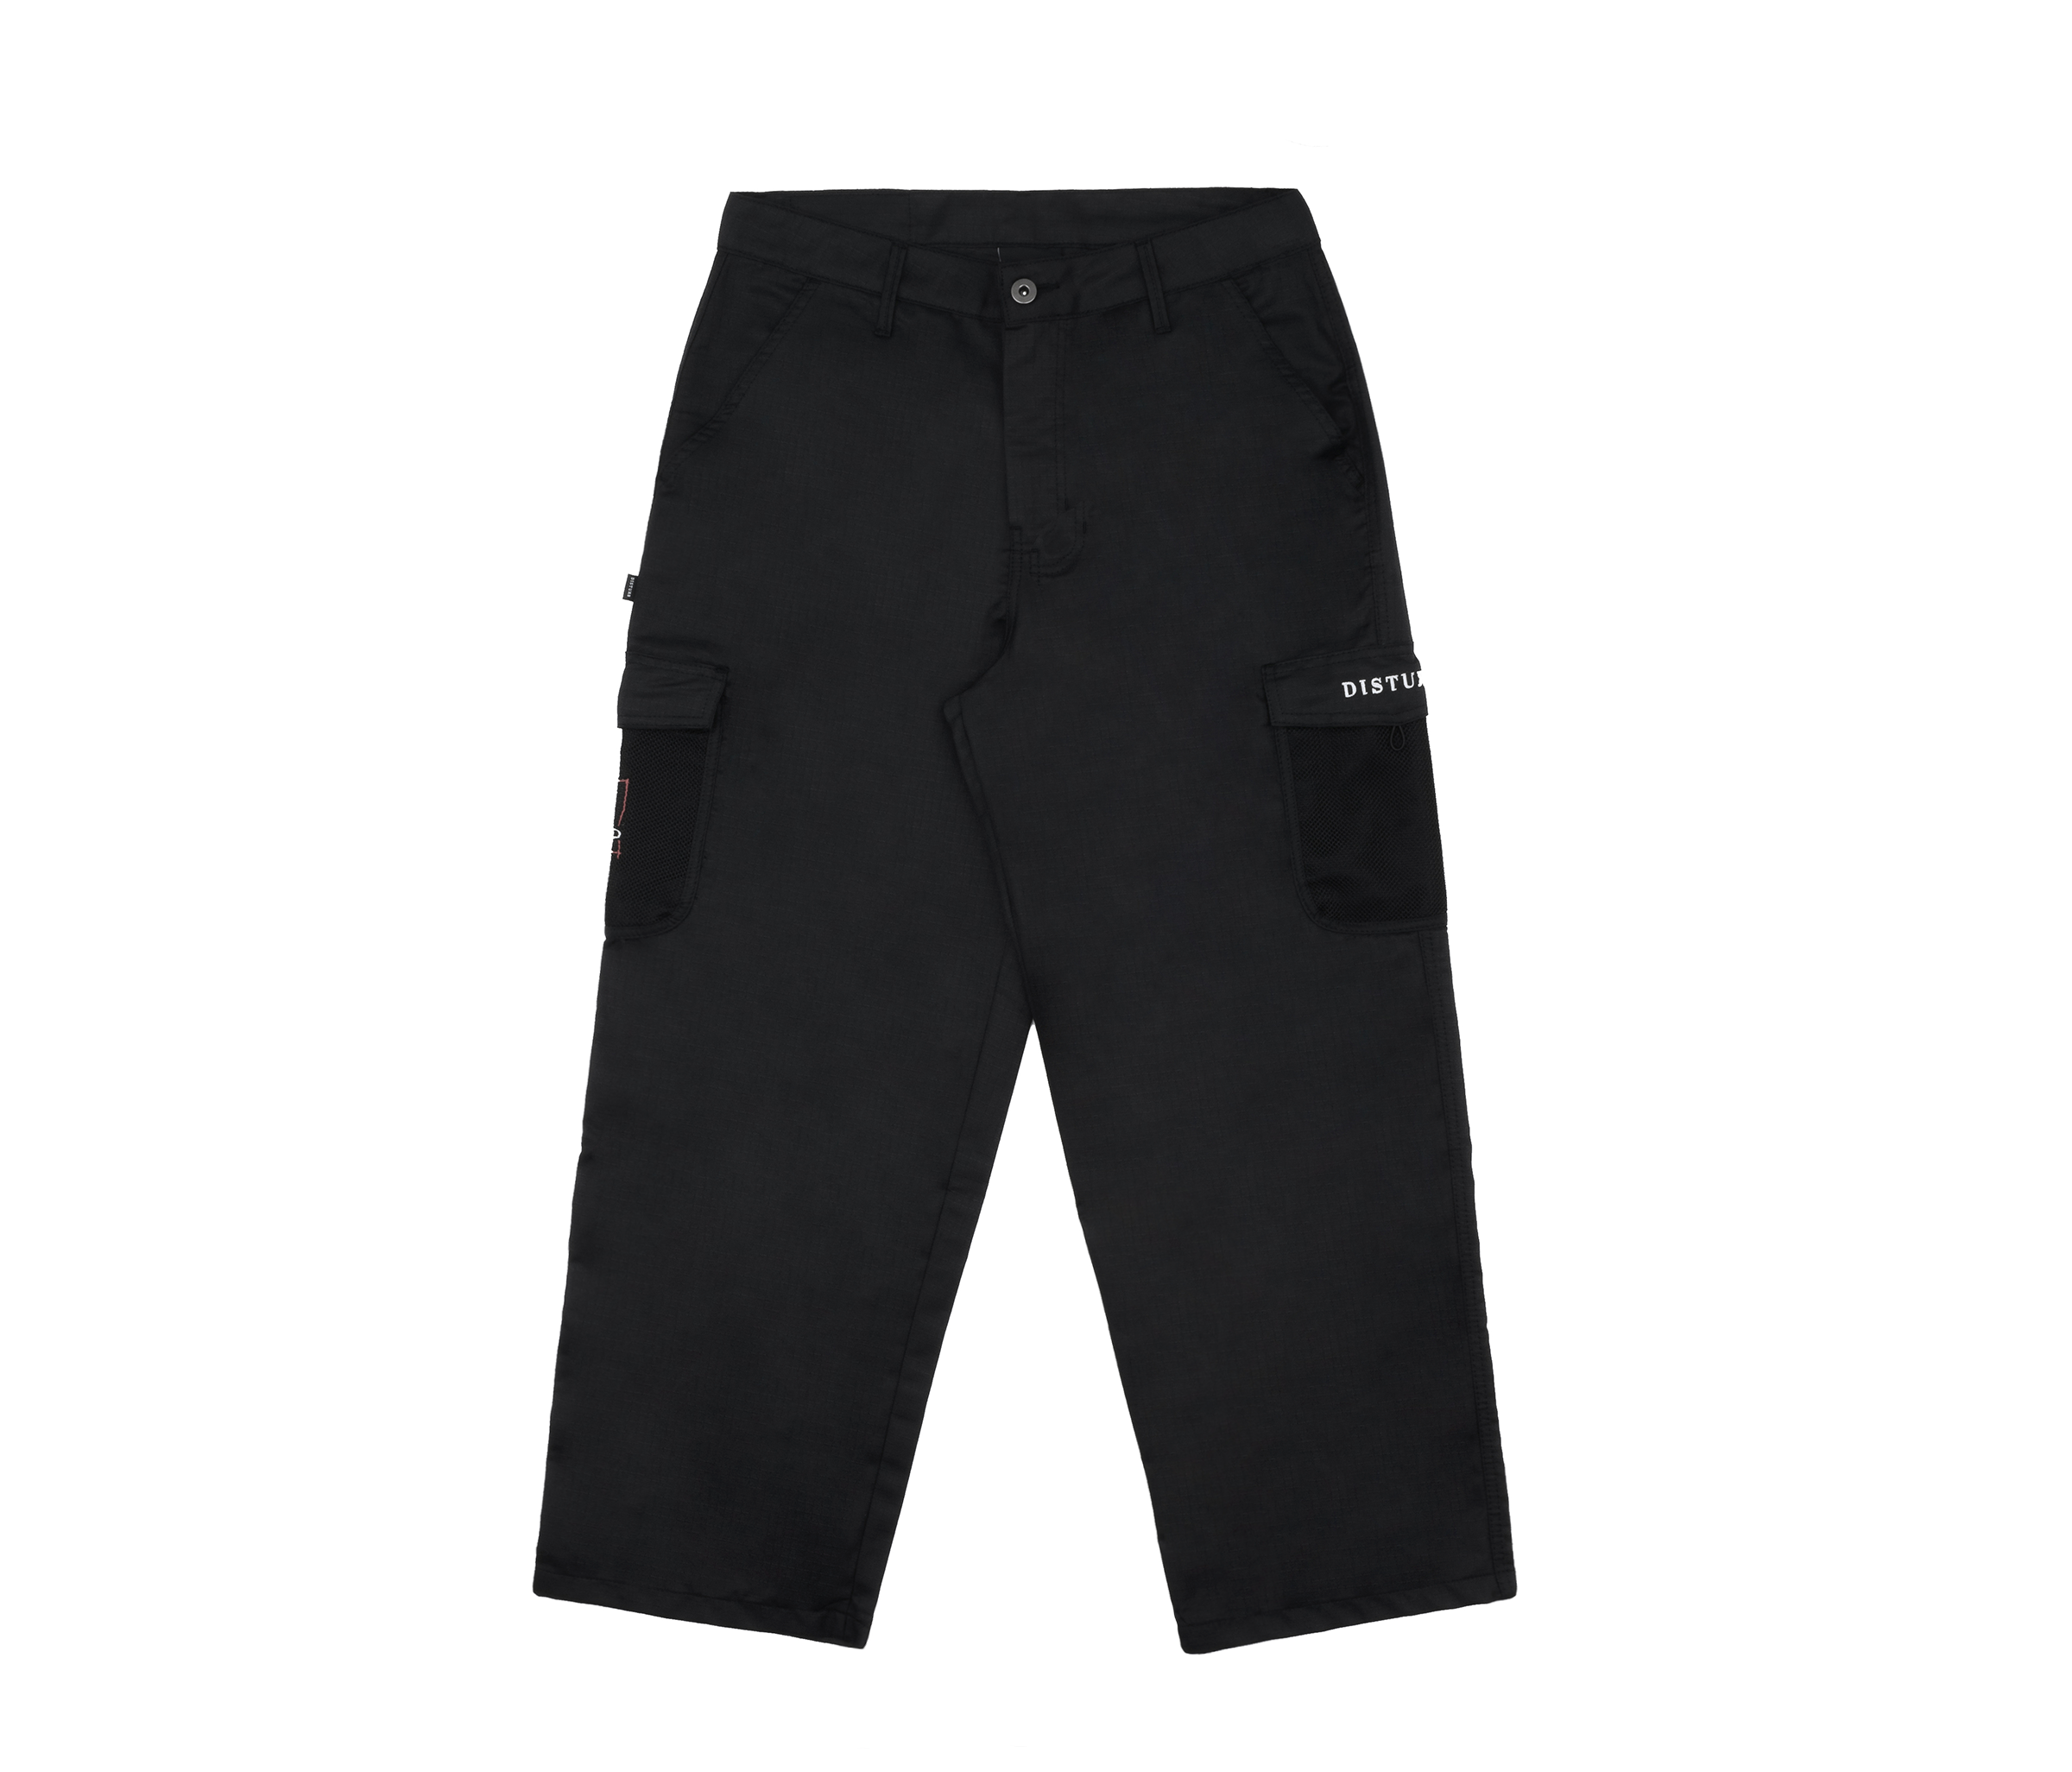 DisturbKast Ripstop Pants in Black | Disturb Epic Apparel